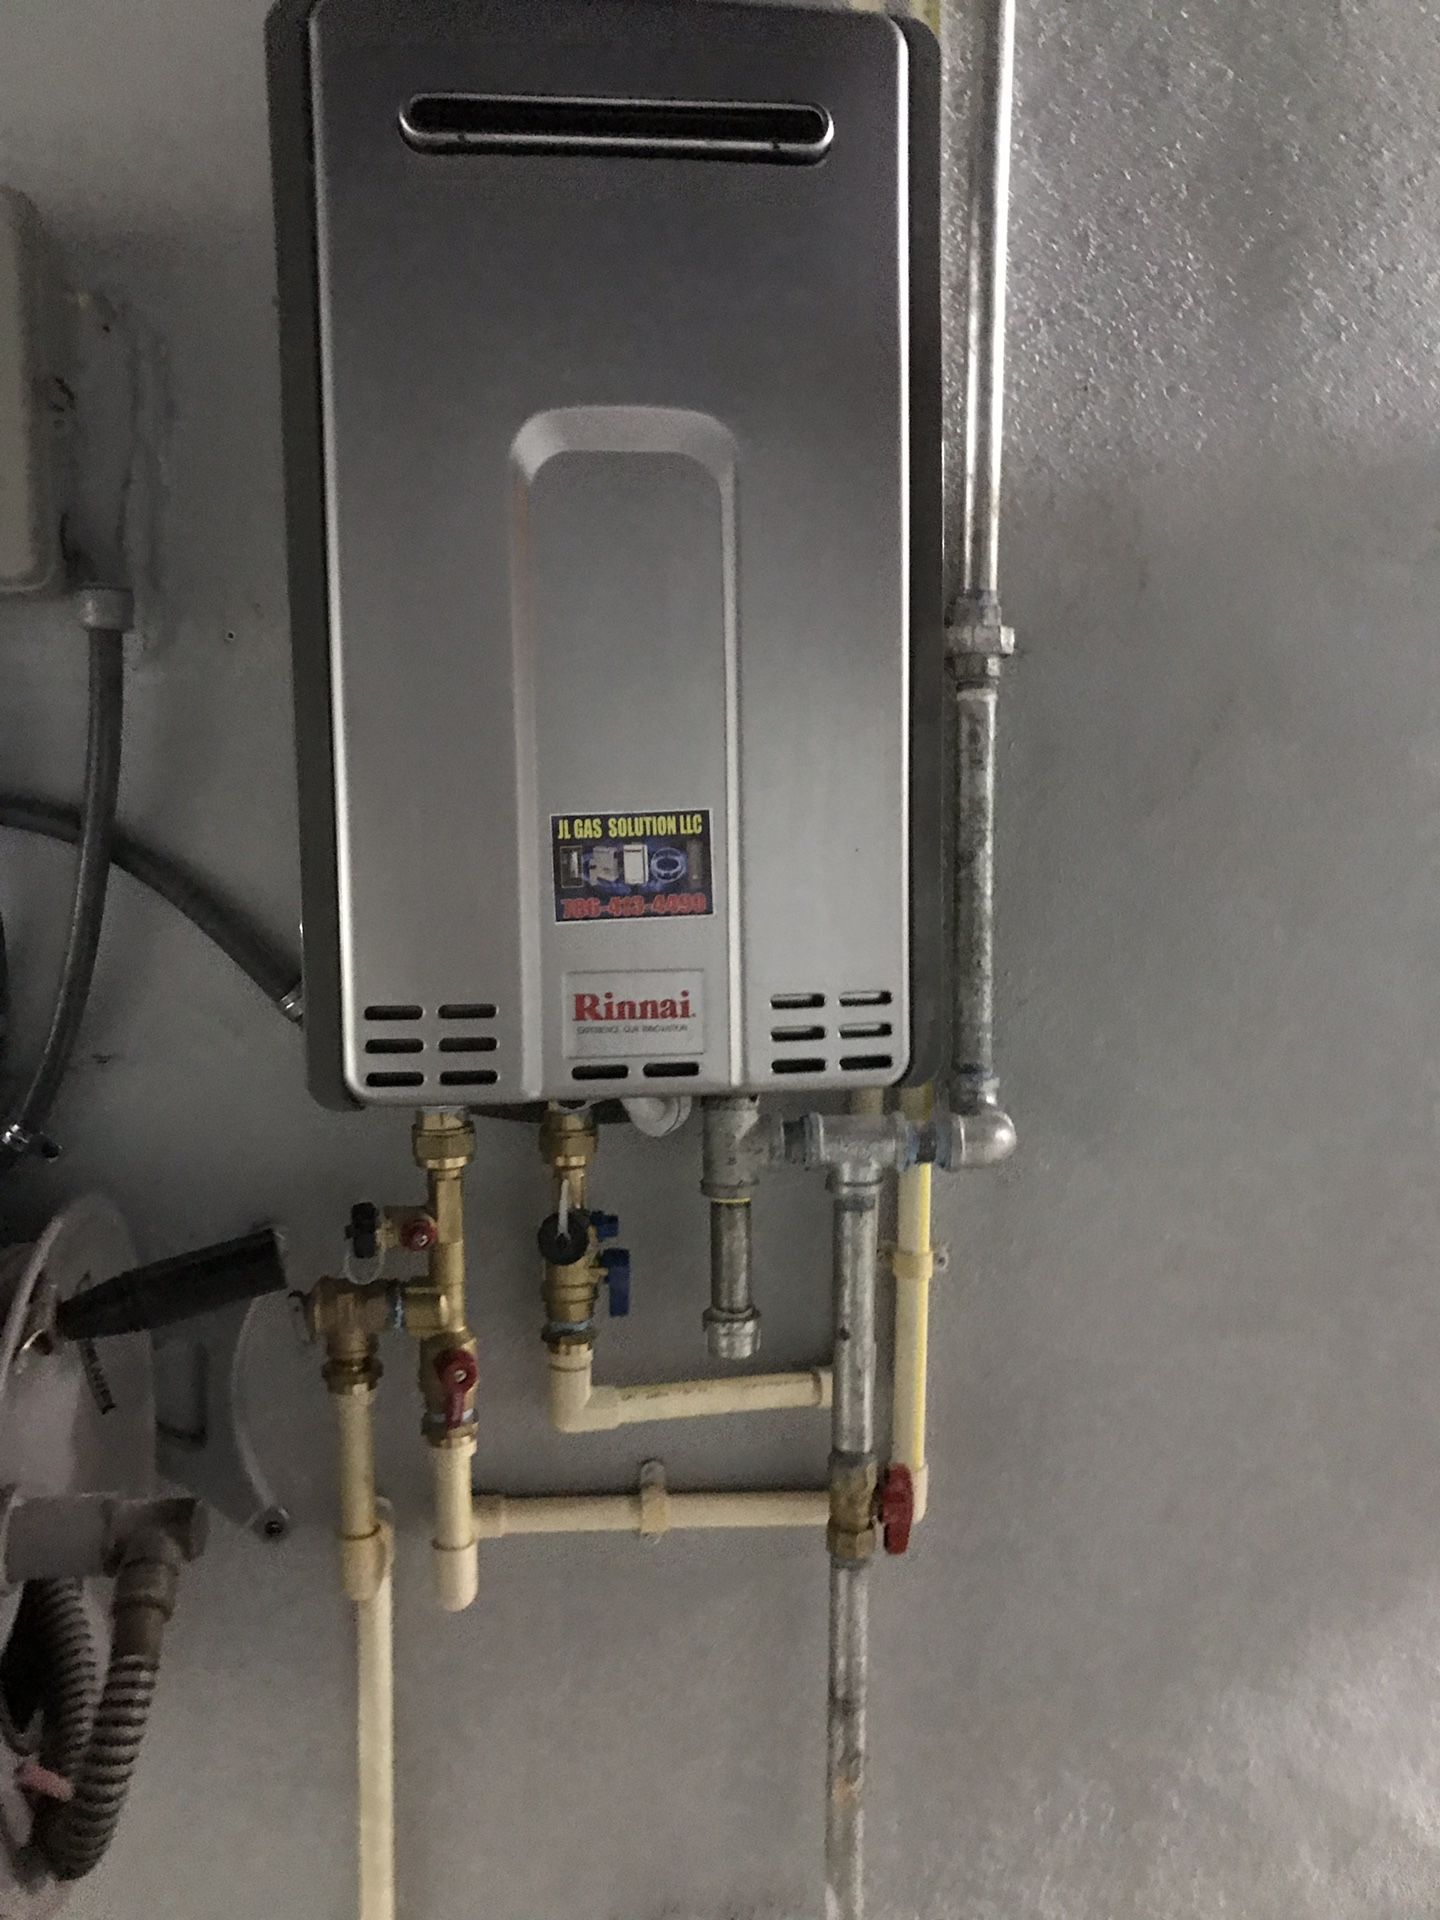 Water heater generadores calentadores installation